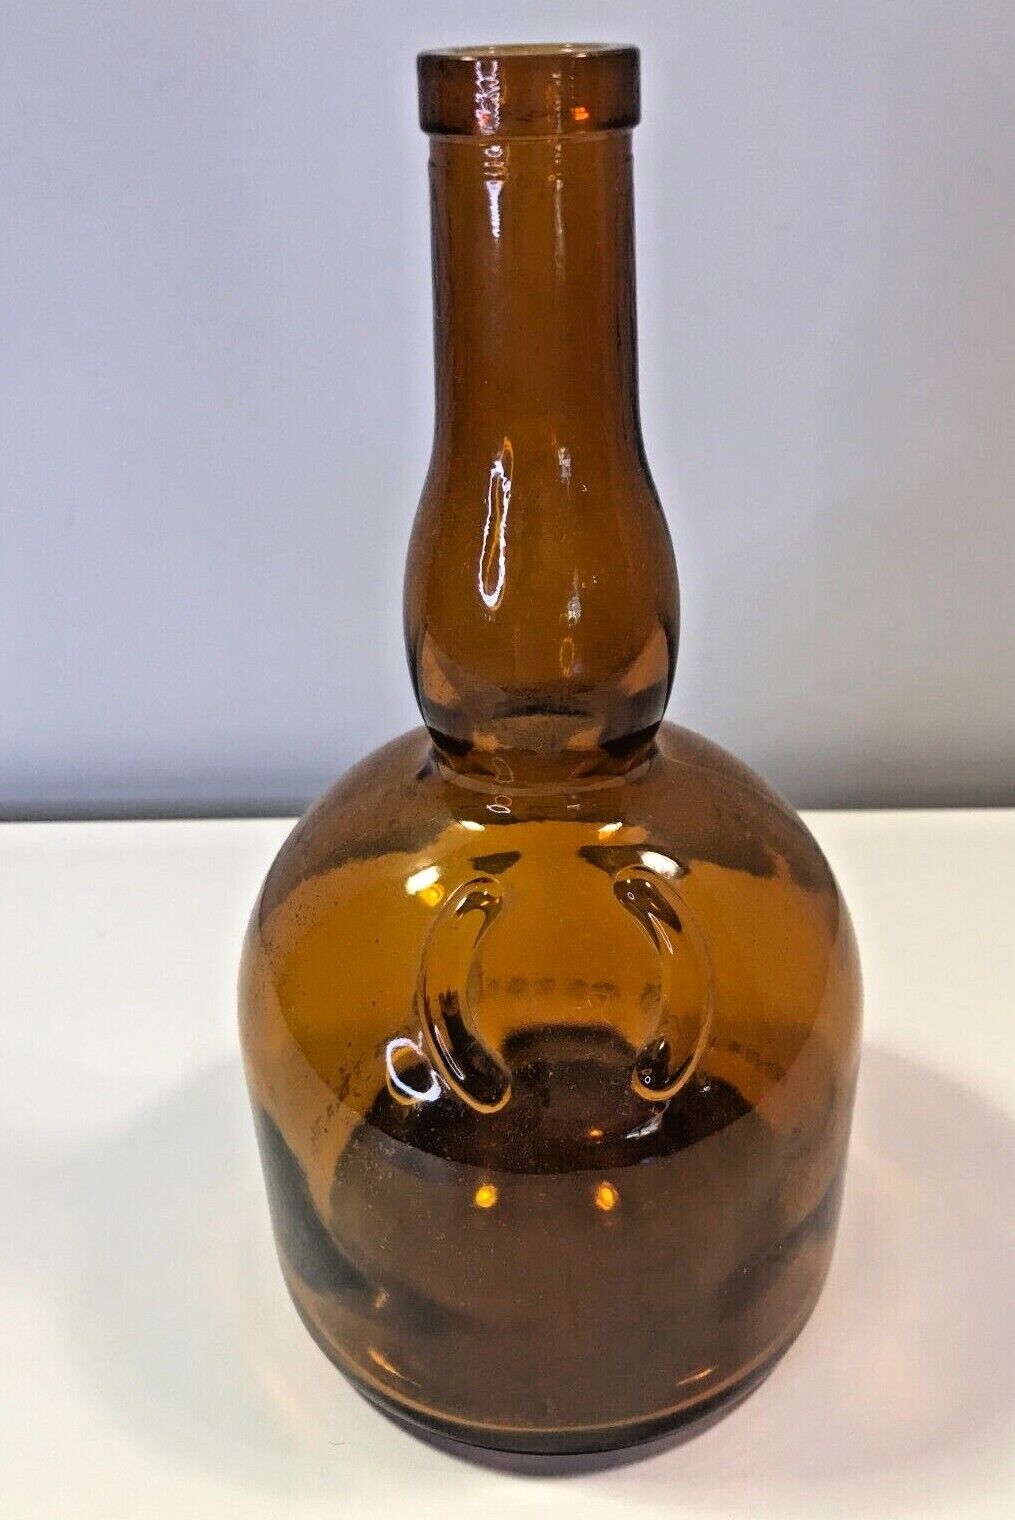 Vintage Amber Glass Liquor Bottle Marnier Lapostolle Liqueurs Paris France